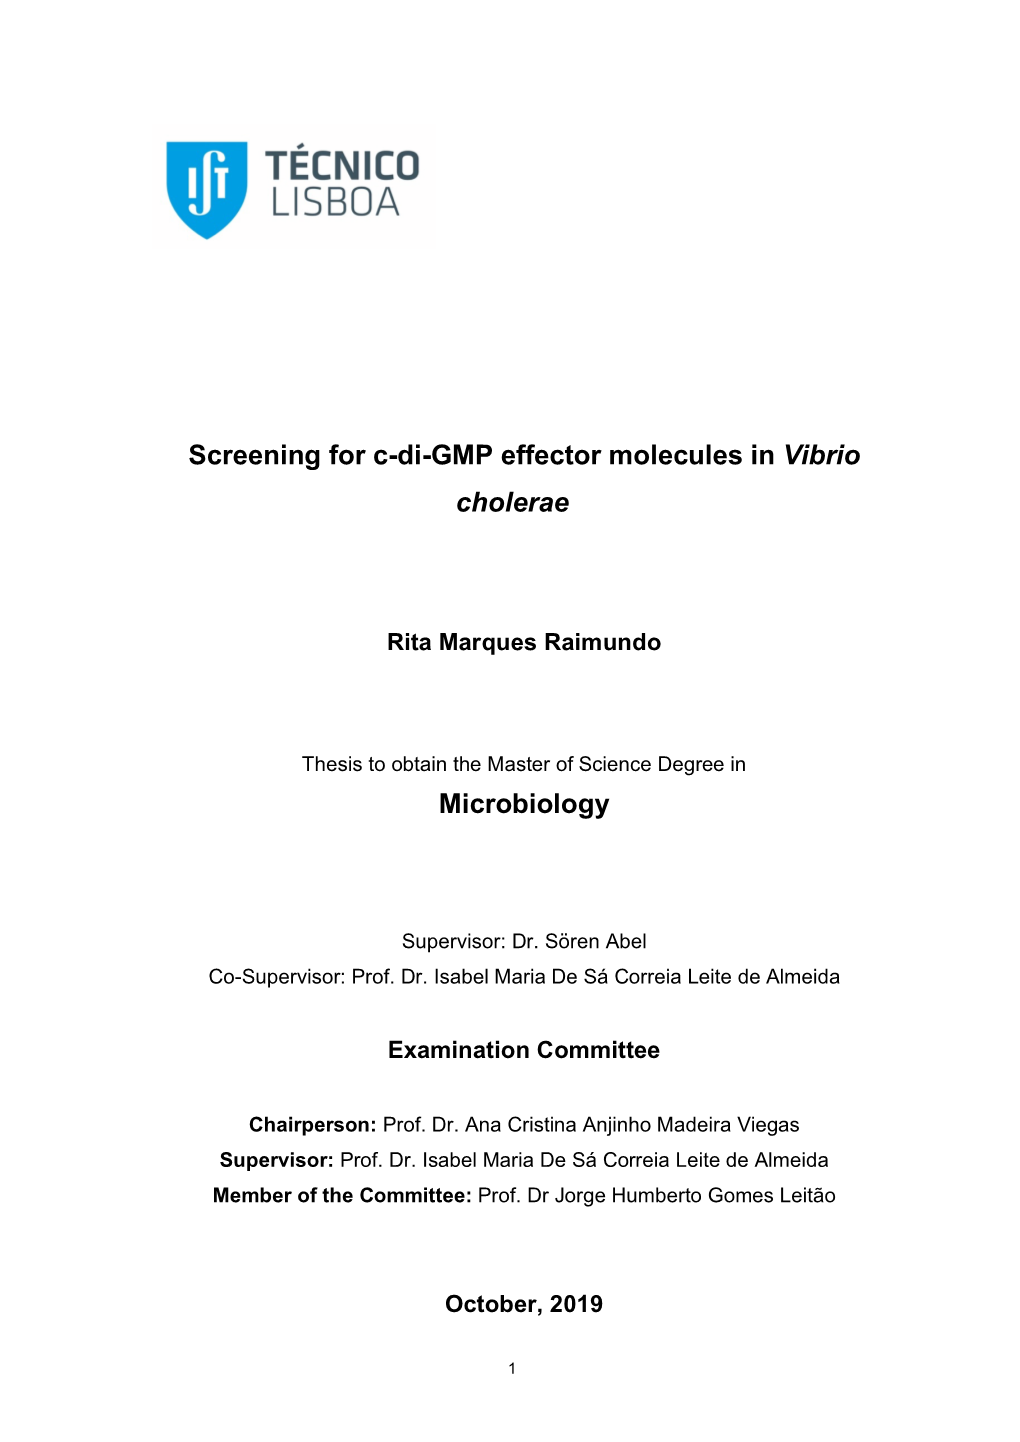 Screening for C-Di-GMP Effector Molecules in Vibrio Cholerae